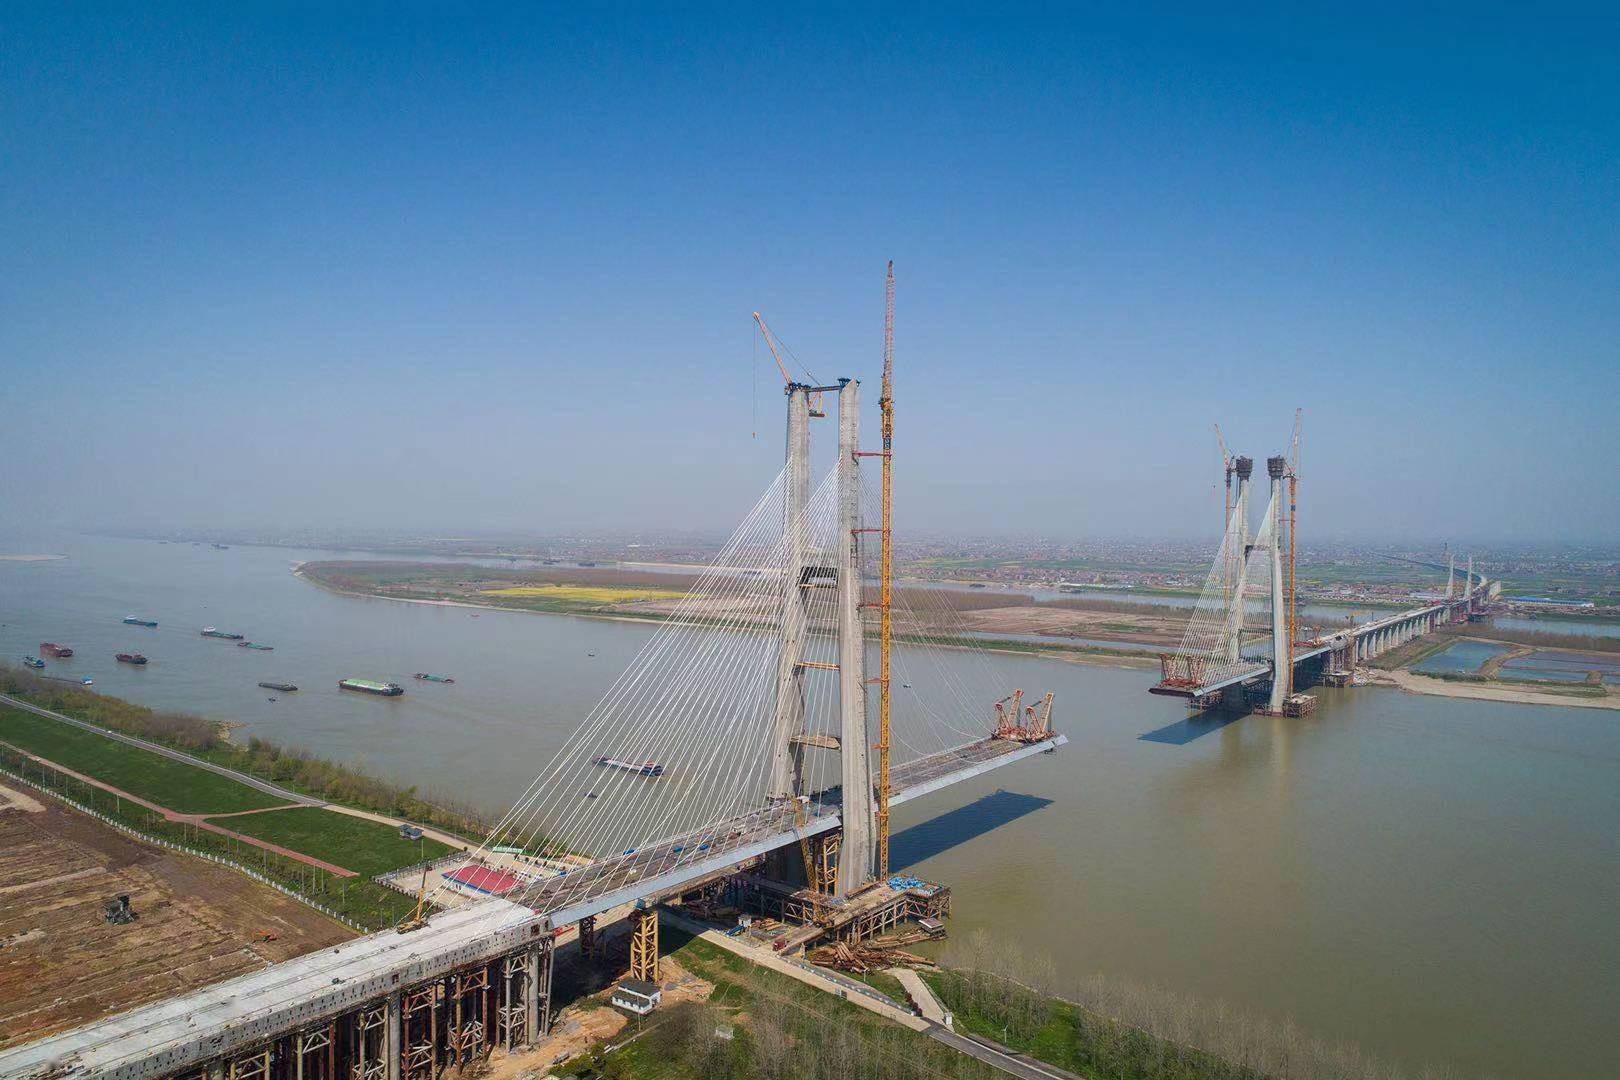 黄梅县,南侧位于江西九江市,一桥跨越两省,距离下游的九江长江二桥约5